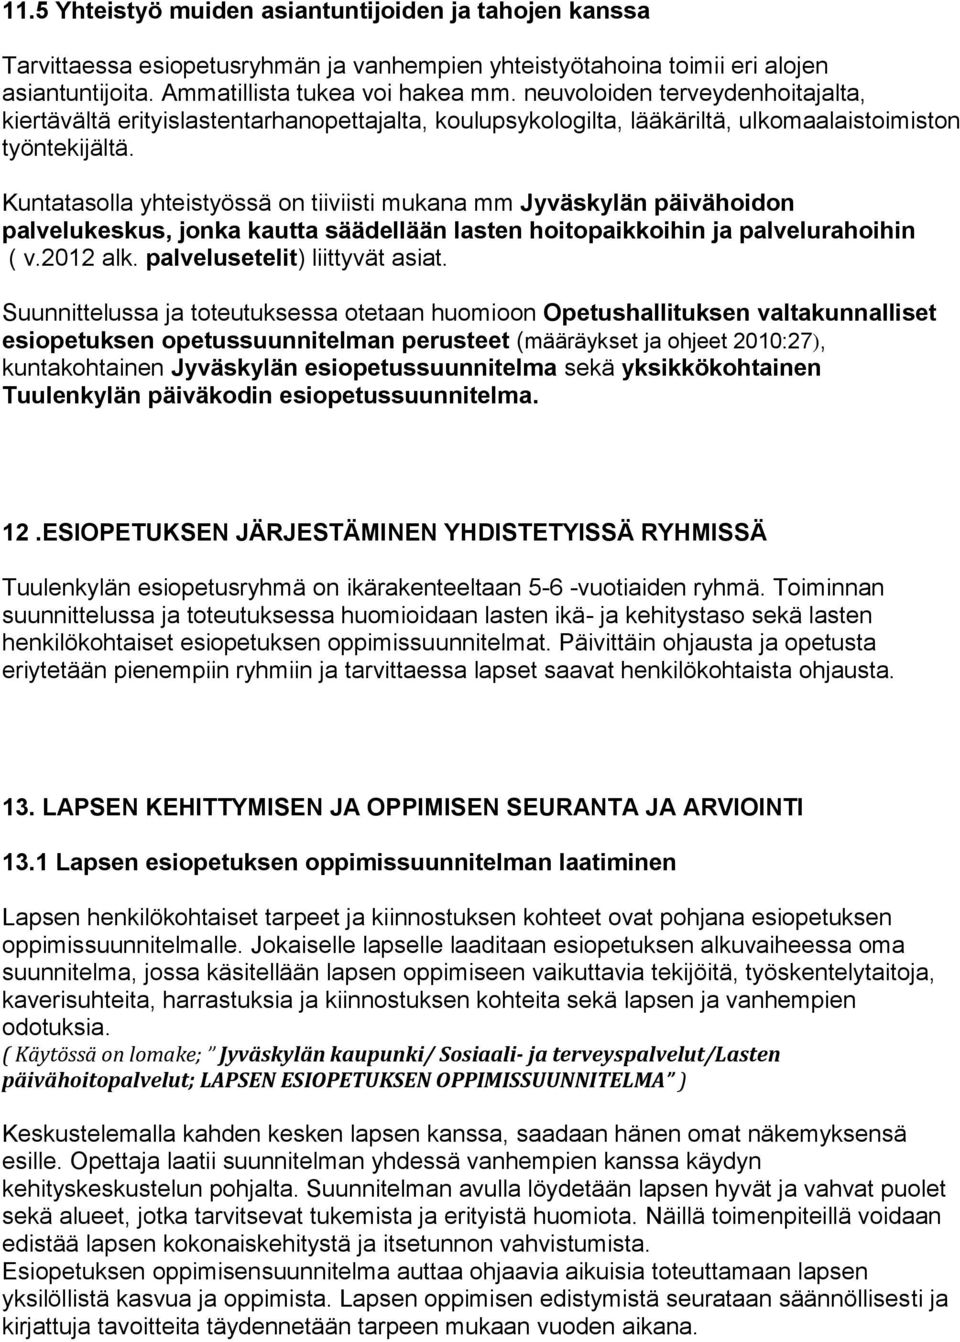 Kuntatasolla yhteistyössä on tiiviisti mukana mm Jyväskylän päivähoidon palvelukeskus, jonka kautta säädellään lasten hoitopaikkoihin ja palvelurahoihin ( v.2012 alk. palvelusetelit) liittyvät asiat.